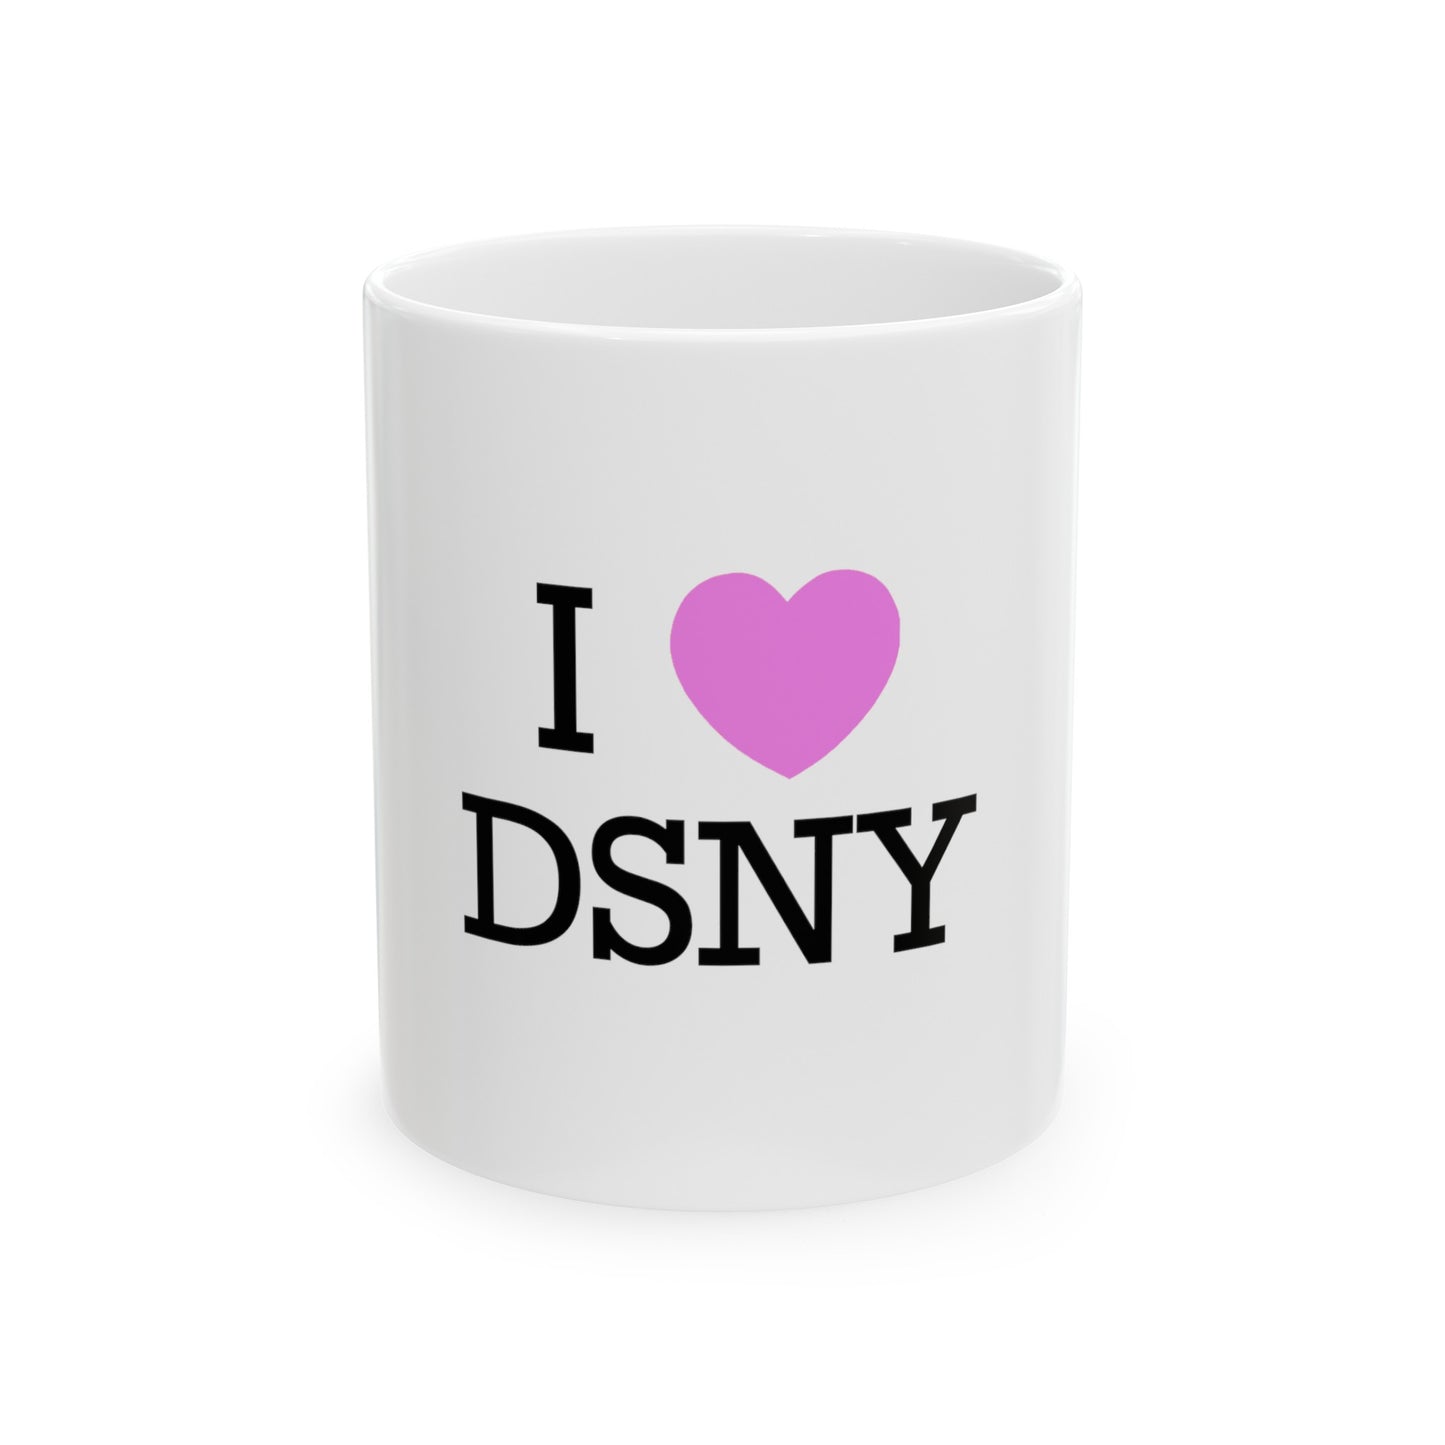 I <3 DSNY - Mug